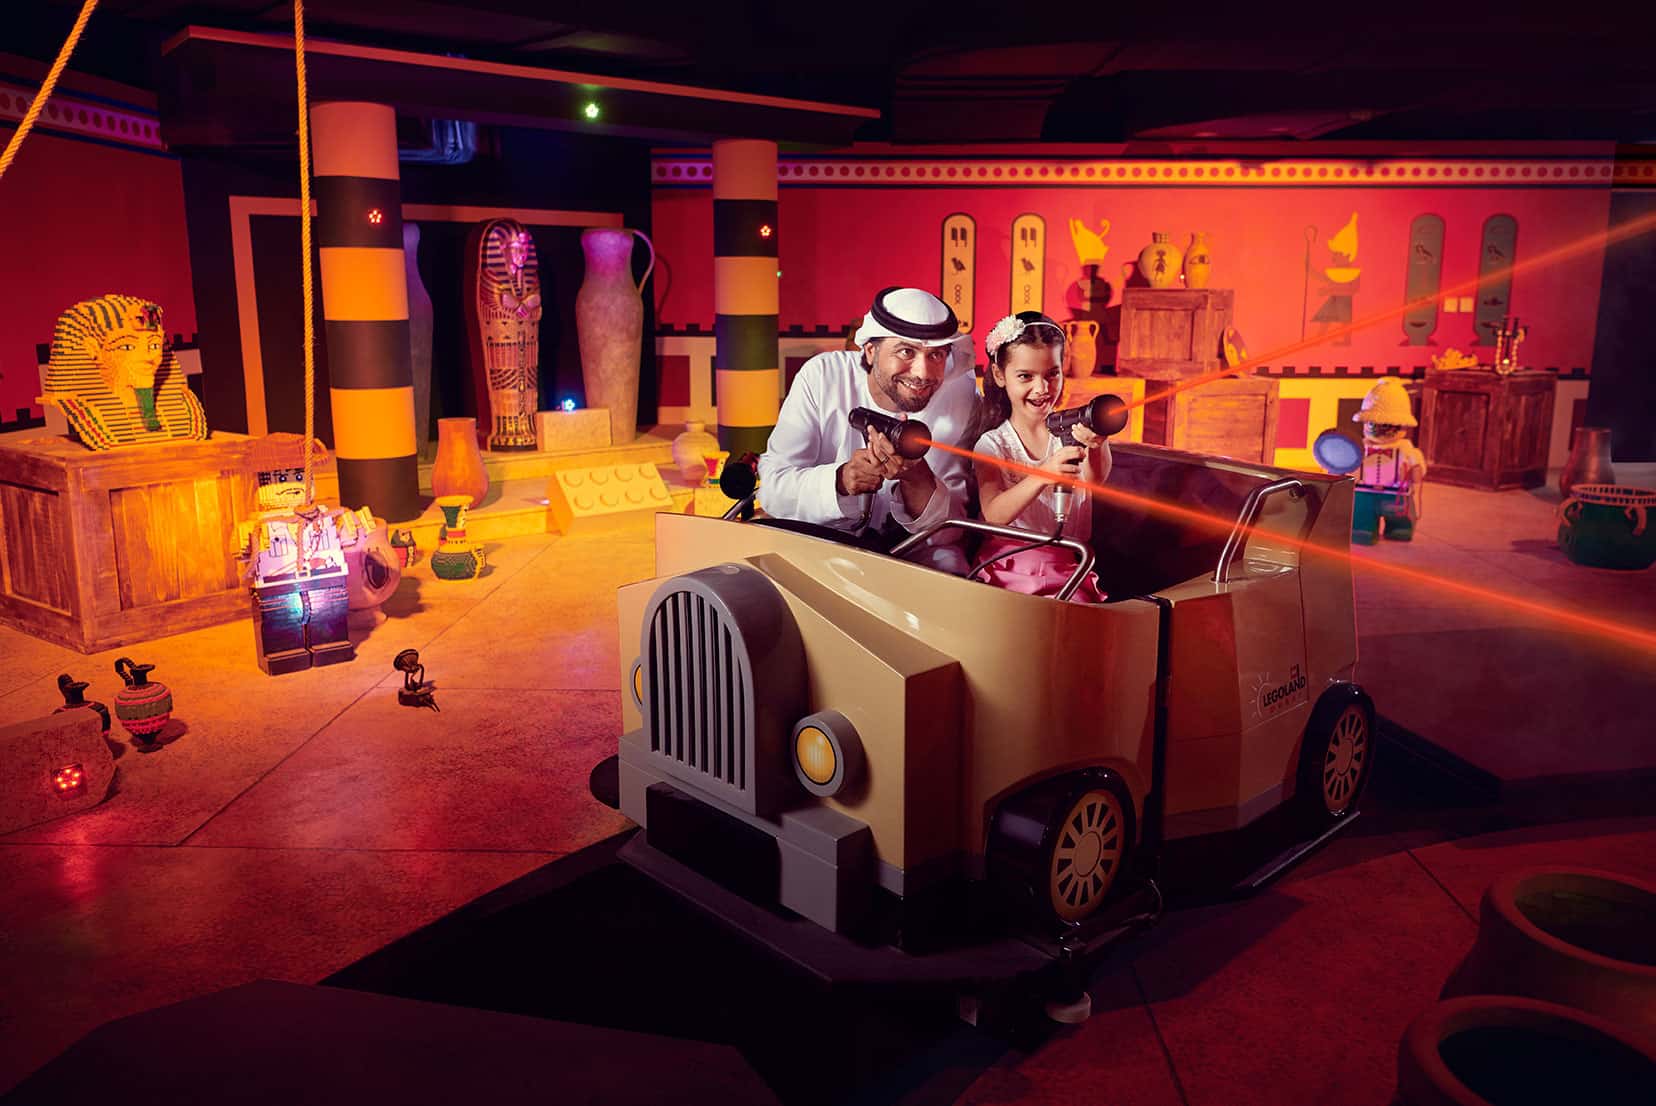 迪拜的室內目的地提供充滿樂趣、互動活動和娛樂的氛圍，讓孩子們感到愉悅